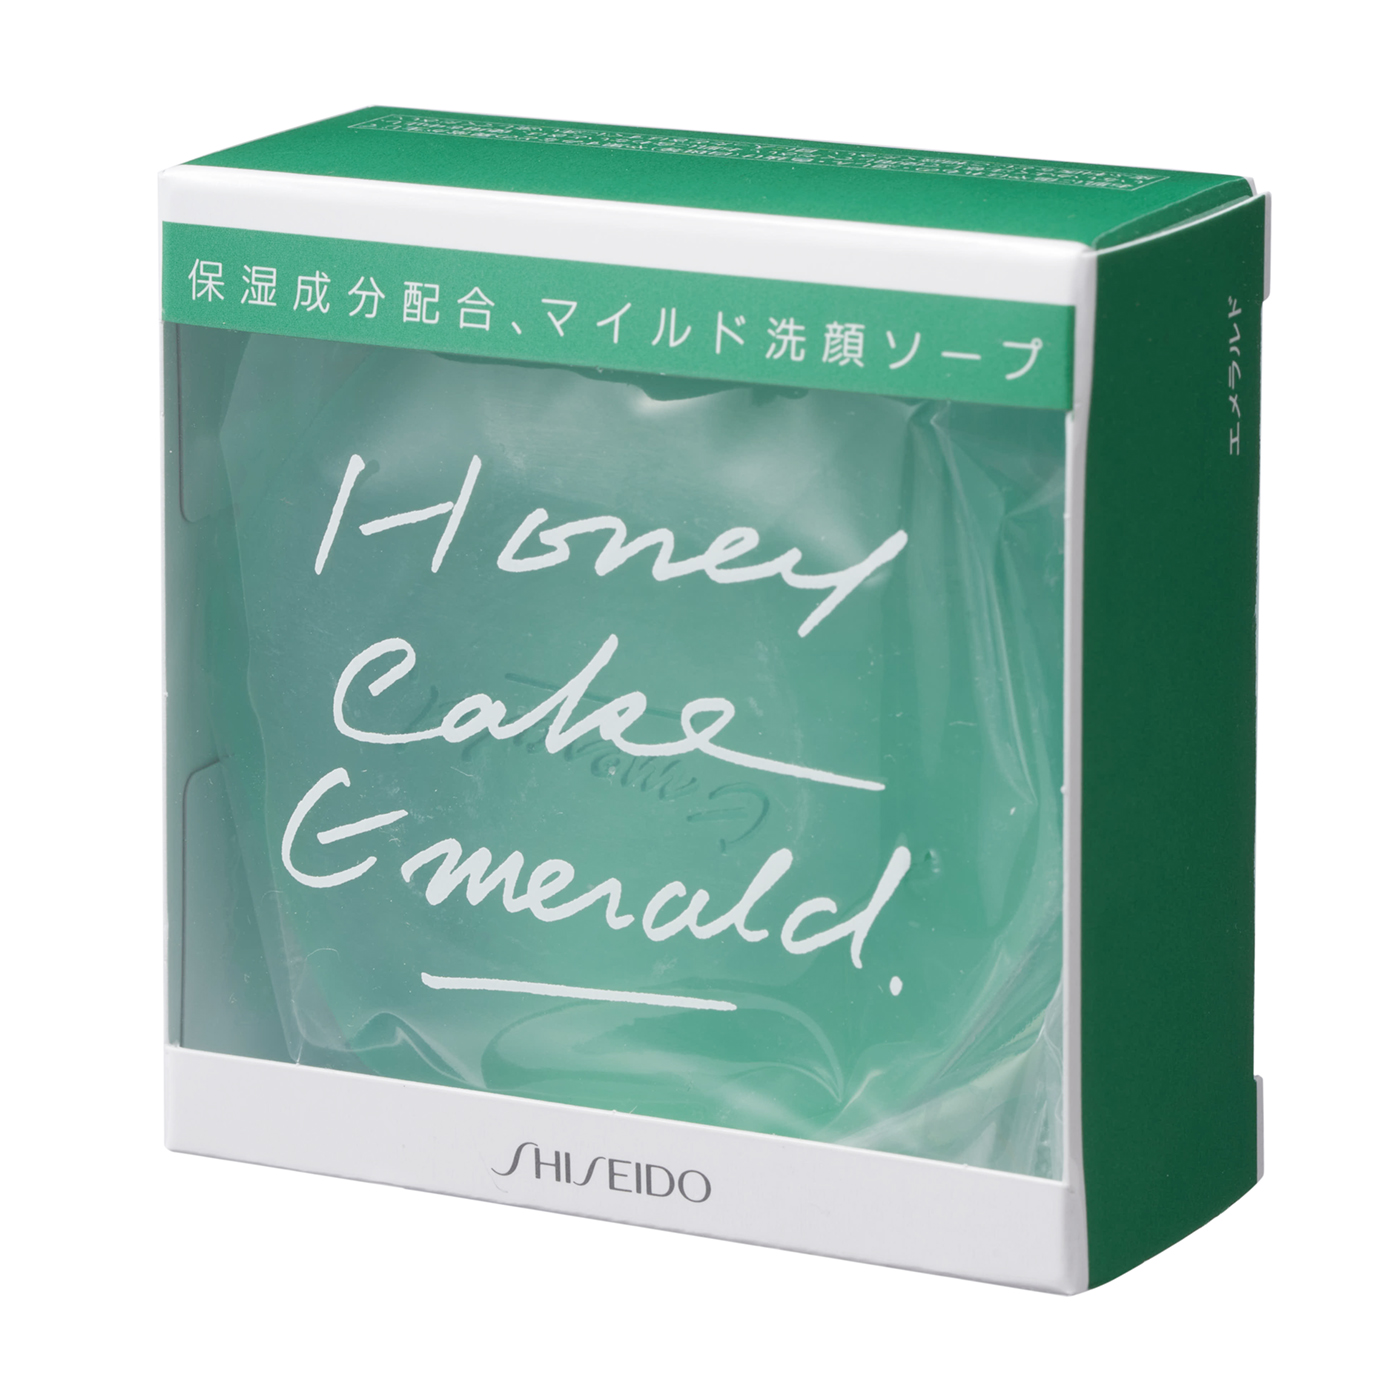 資生堂ホネケーキ エメラルドNA - 基礎化粧品